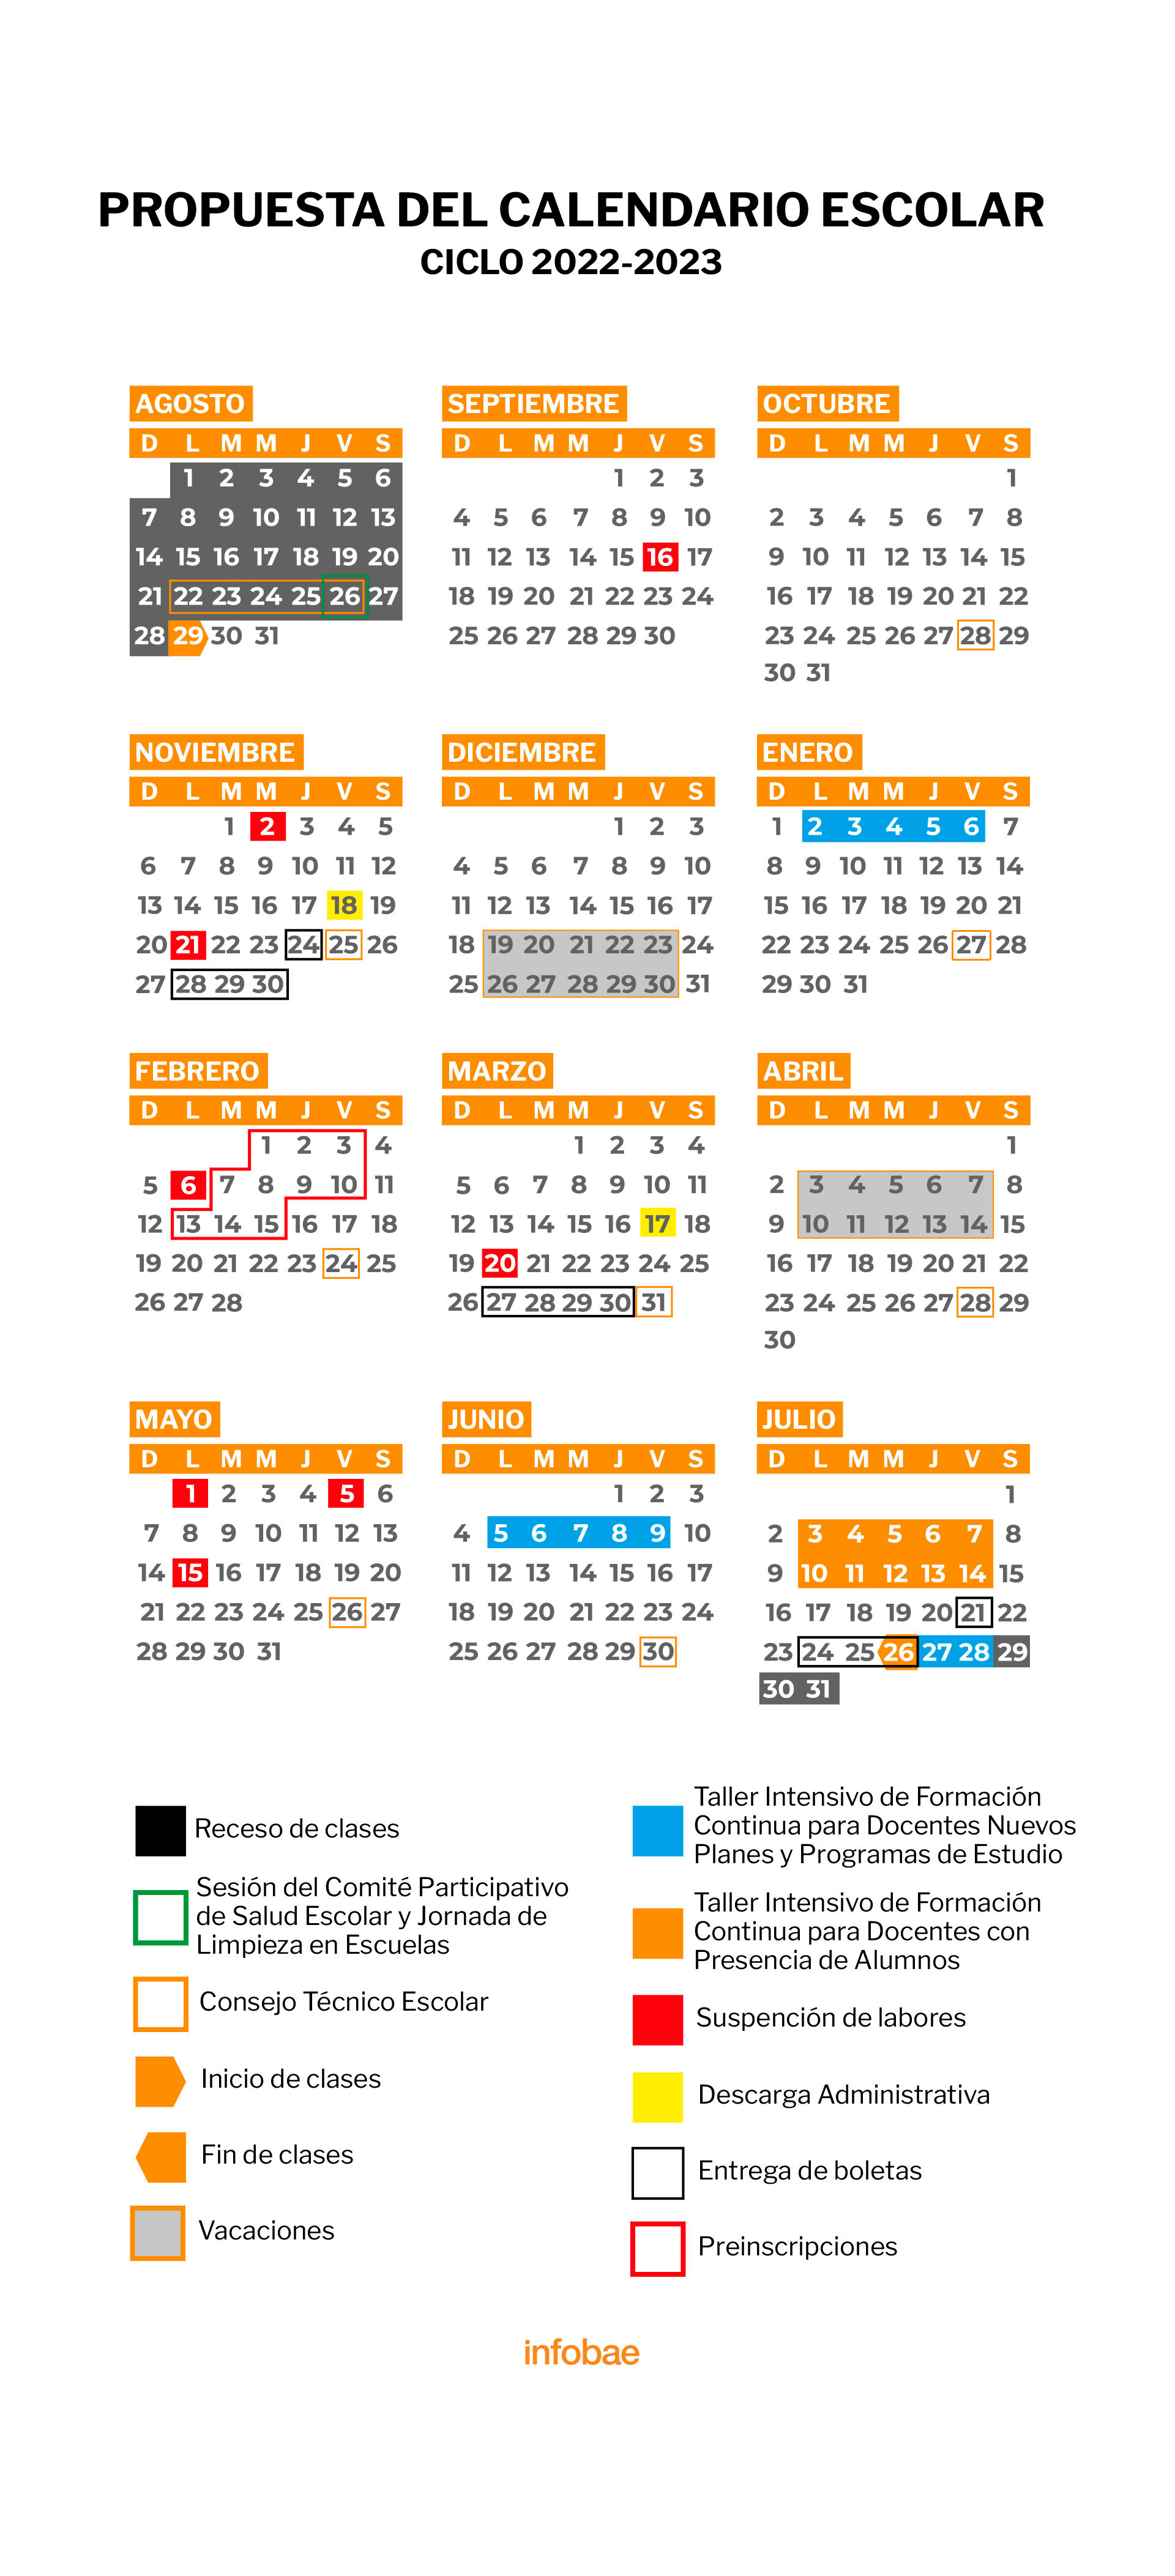 Calendario Oficial de la SEP 2022-2023 ok ok ok. (Foto: Infobae)